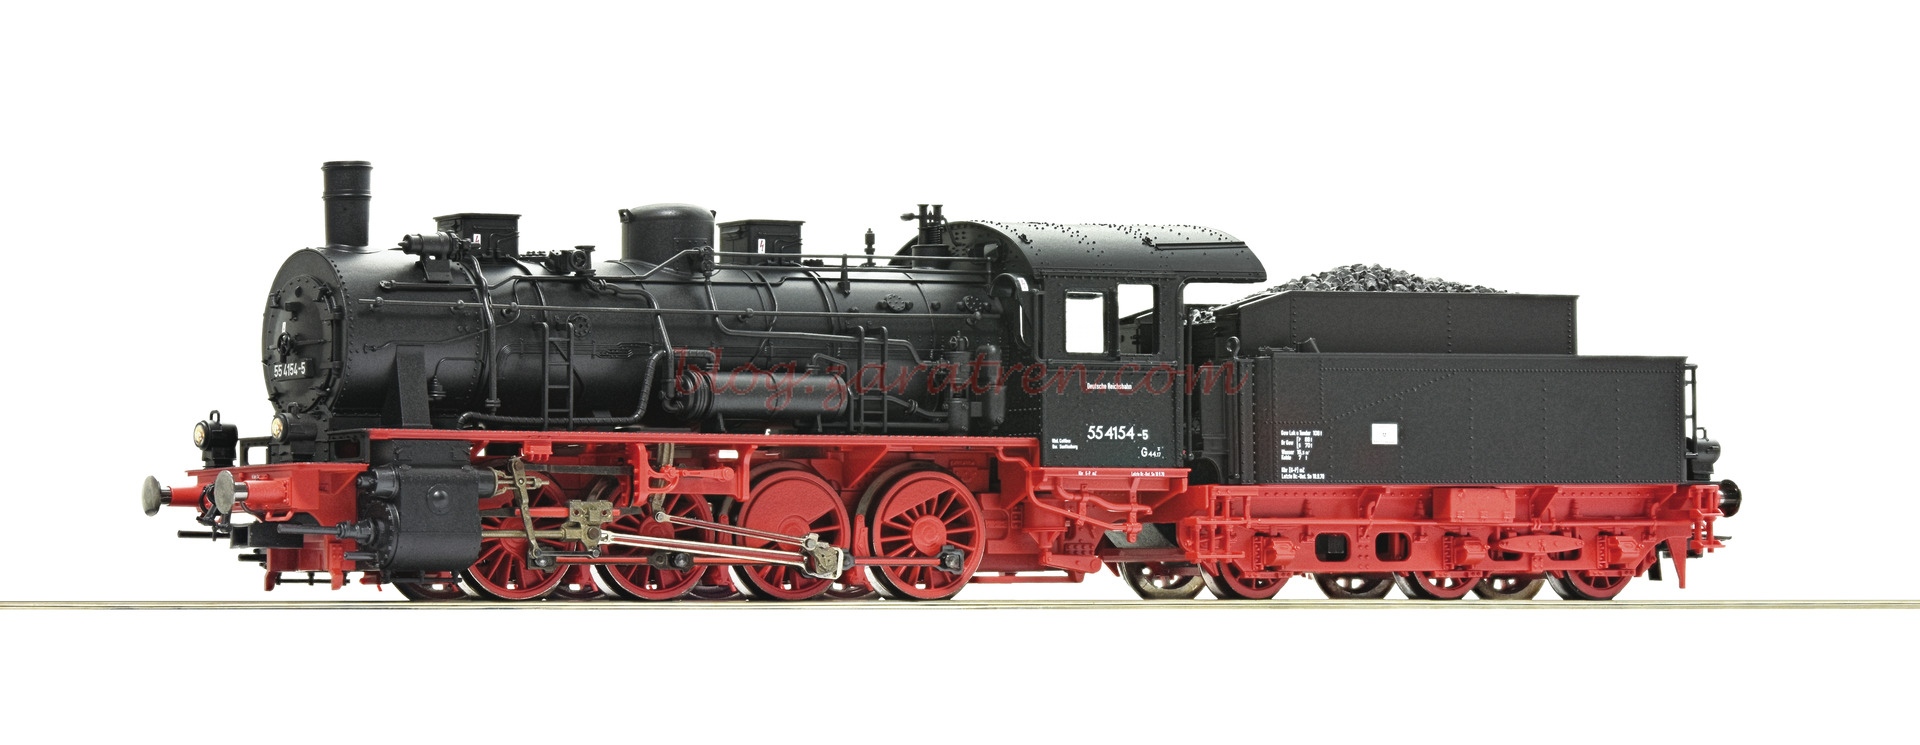 Roco – Locomotora de Vapor Clase 55, 4154-5, DR, Epoca IV, Escala H0. Ref: 72046.